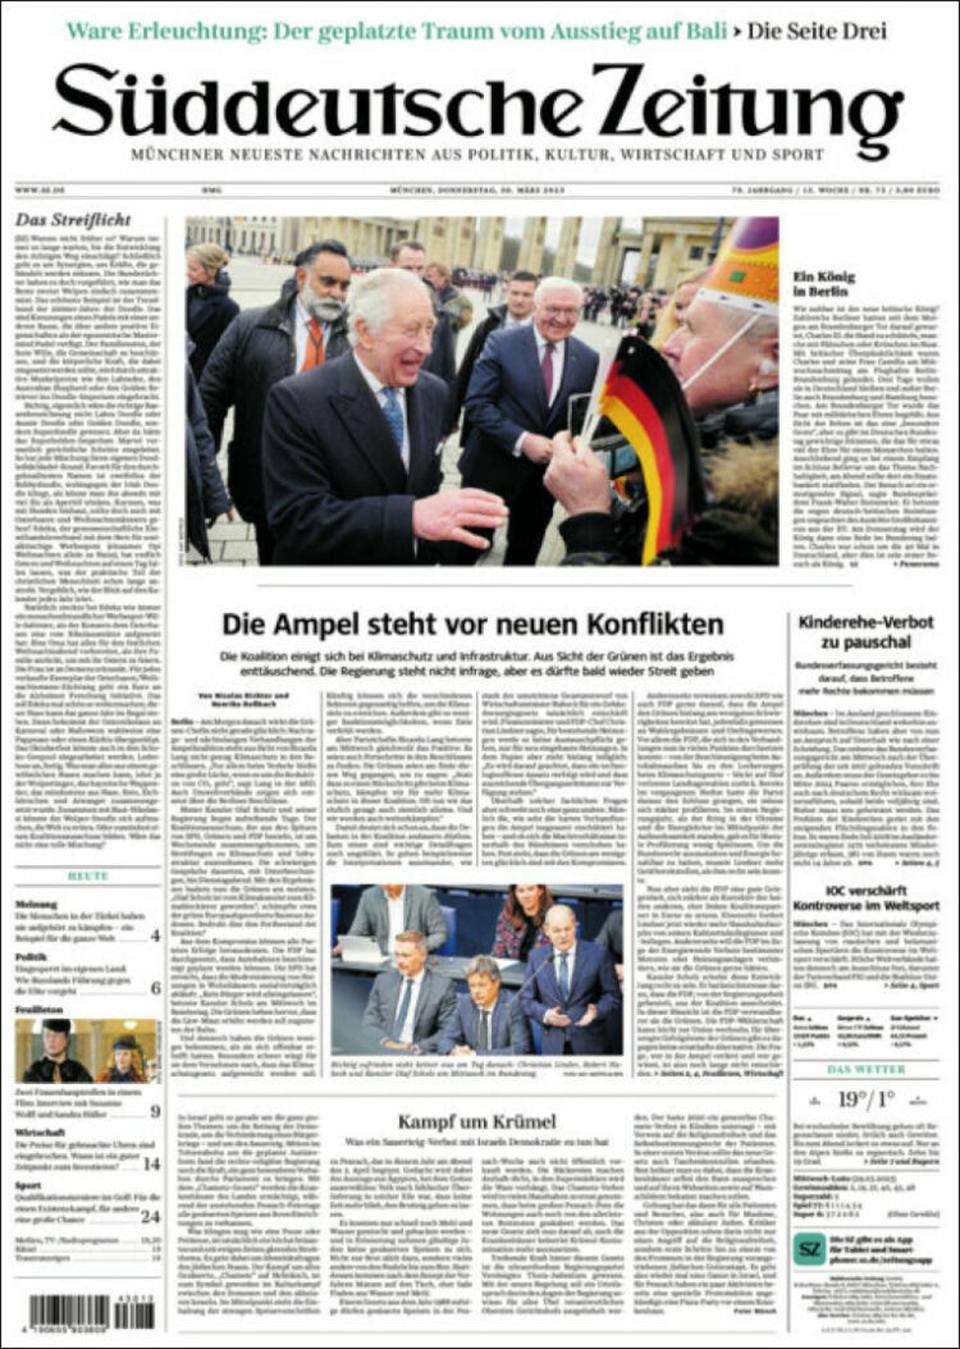 ‘A King in Berlin’, reads the front page of Munich-based daily newspaper the Süddeutsche Zeitung (Suddeutsche Zeitung)